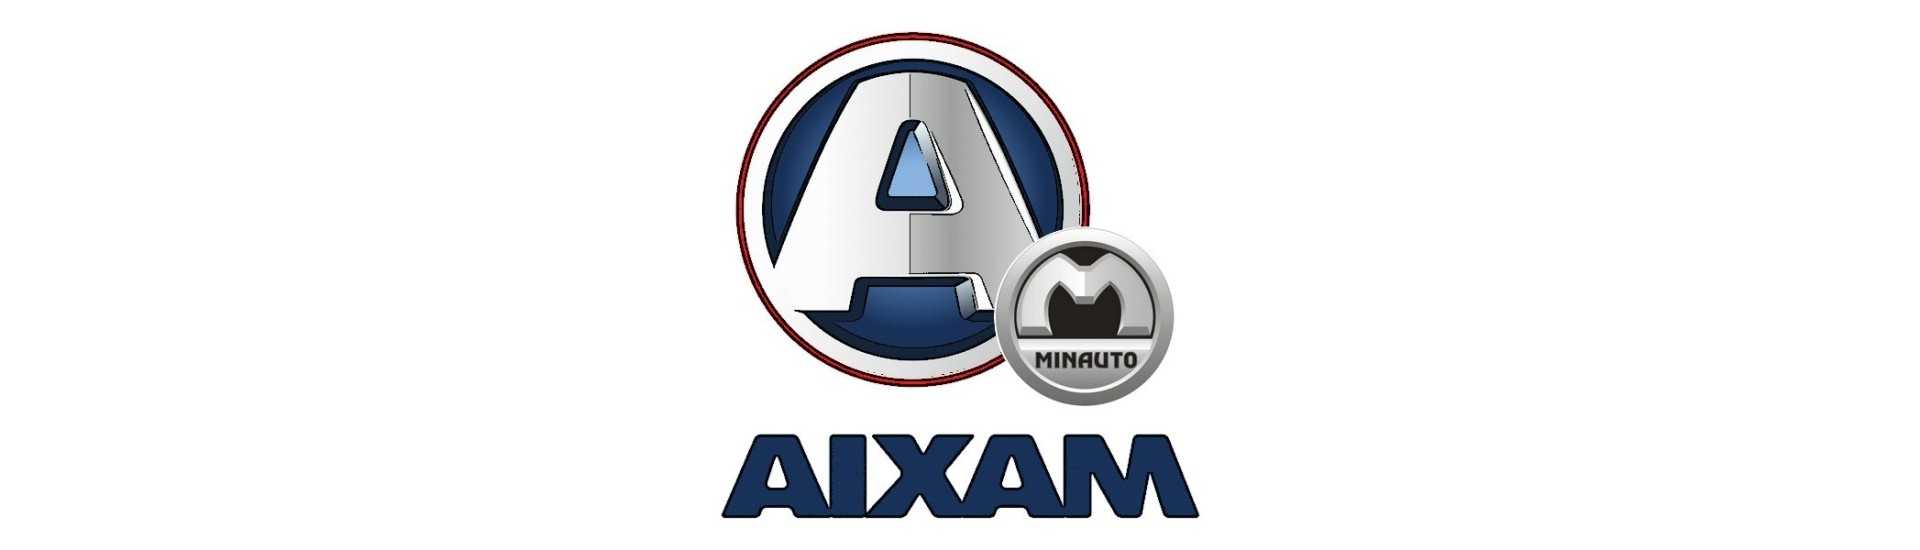 Moyeu + brake disc for car without permit Aixam Minauto